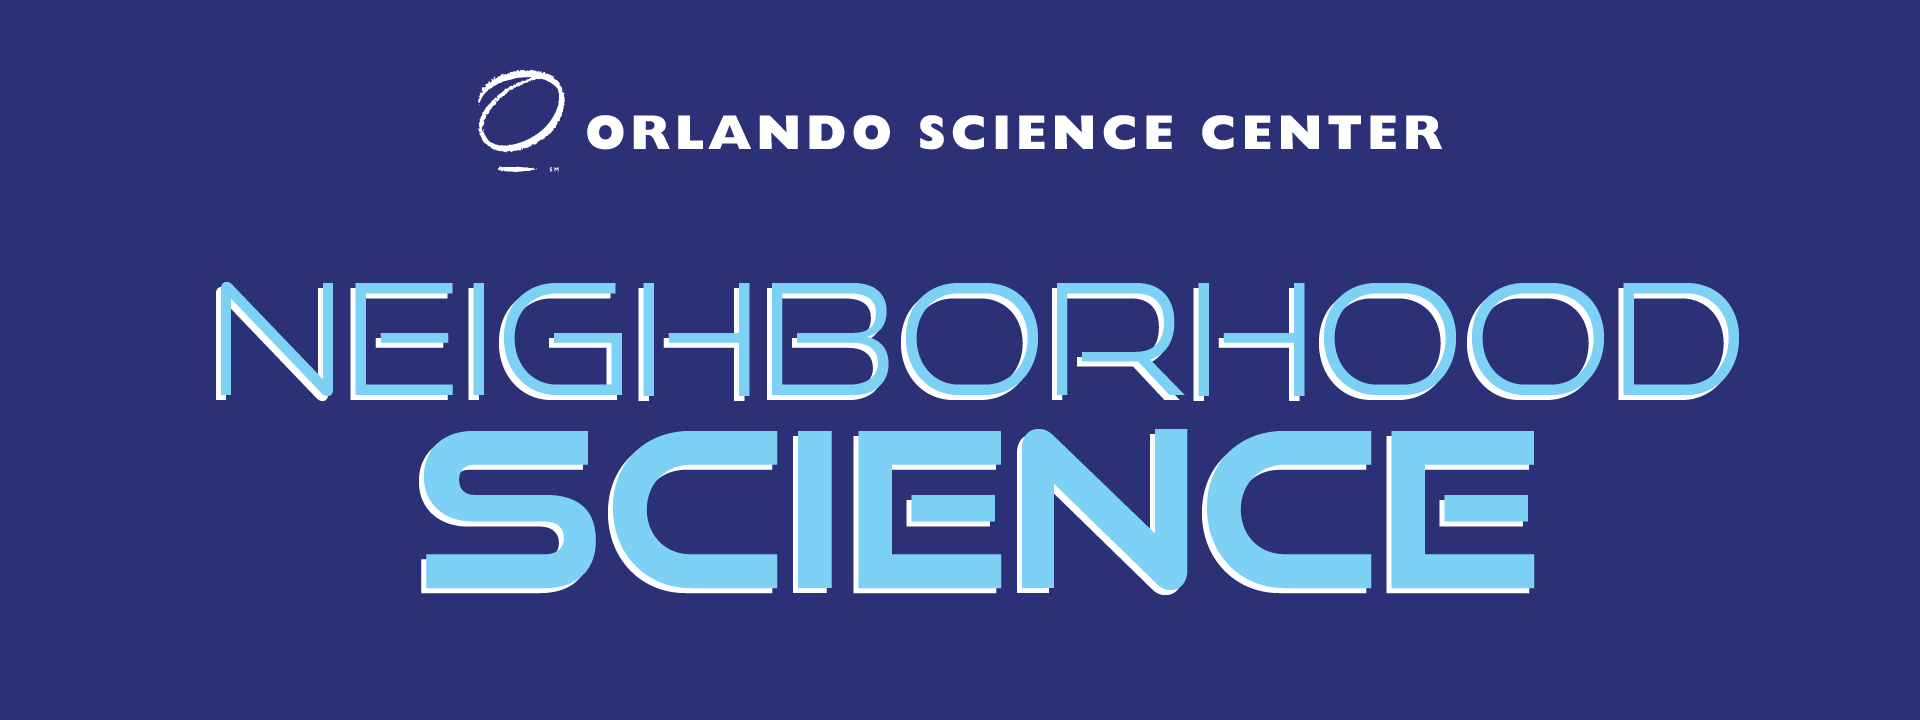 Orlando Science Center Neighborhood Science